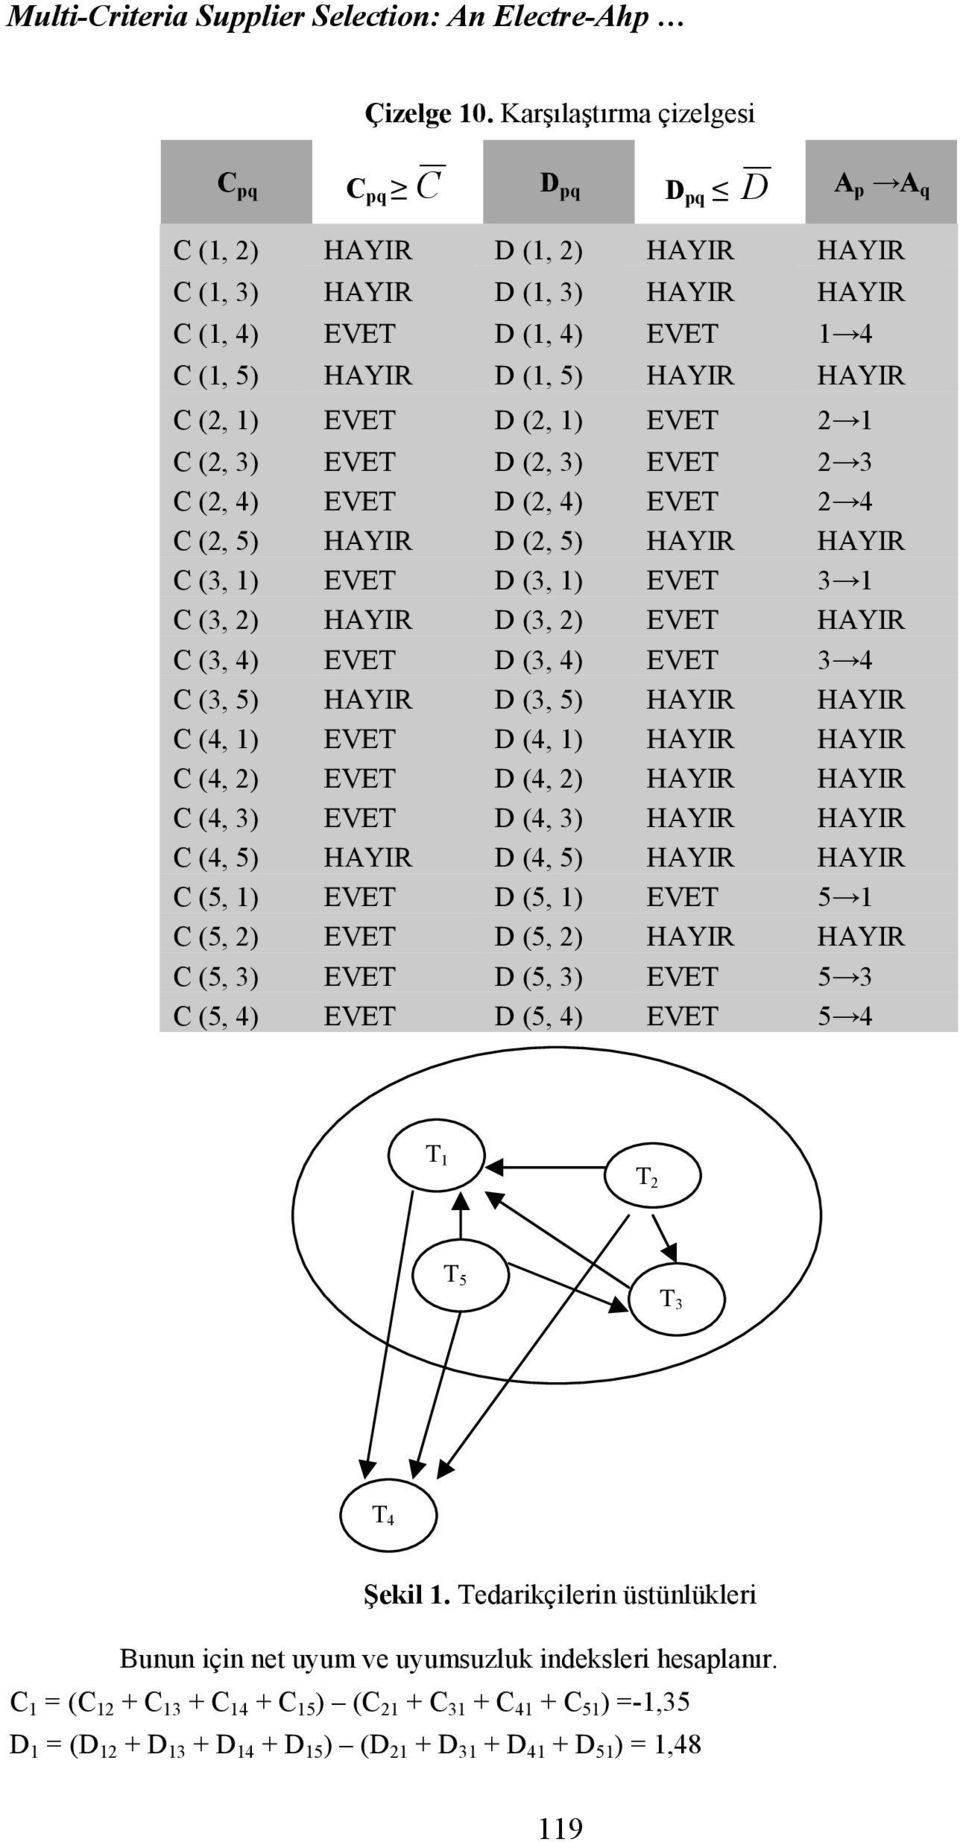 1) EVET 2 1 C (2, 3) EVET (2, 3) EVET 2 3 C (2, 4) EVET (2, 4) EVET 2 4 C (2, 5) HAYIR (2, 5) HAYIR HAYIR C (3, 1) EVET (3, 1) EVET 3 1 C (3, 2) HAYIR (3, 2) EVET HAYIR C (3, 4) EVET (3, 4) EVET 3 4